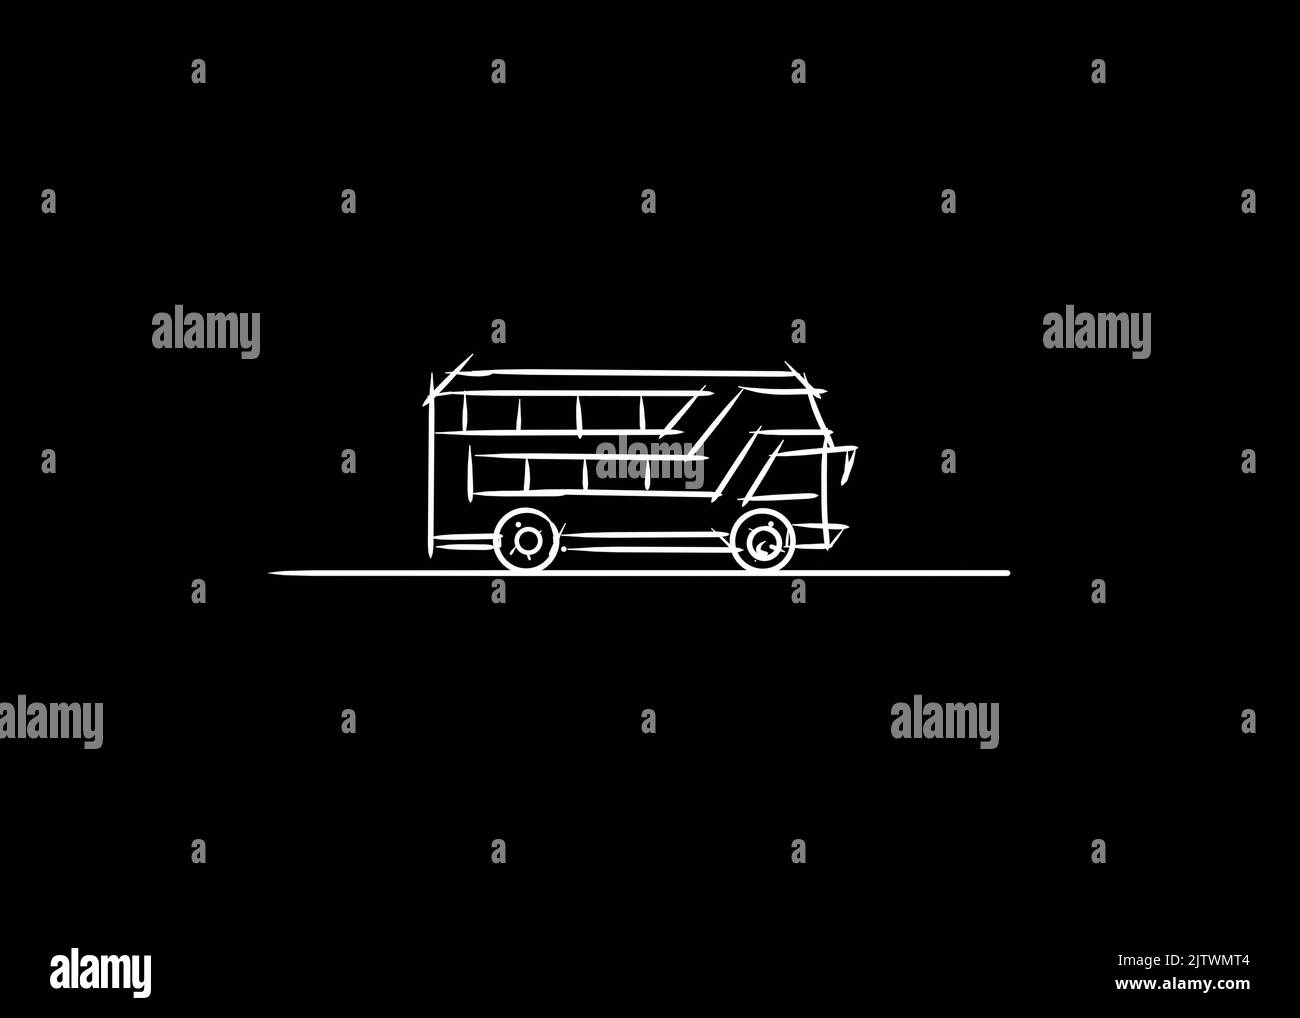 simple bus vector sketch Stock Photo